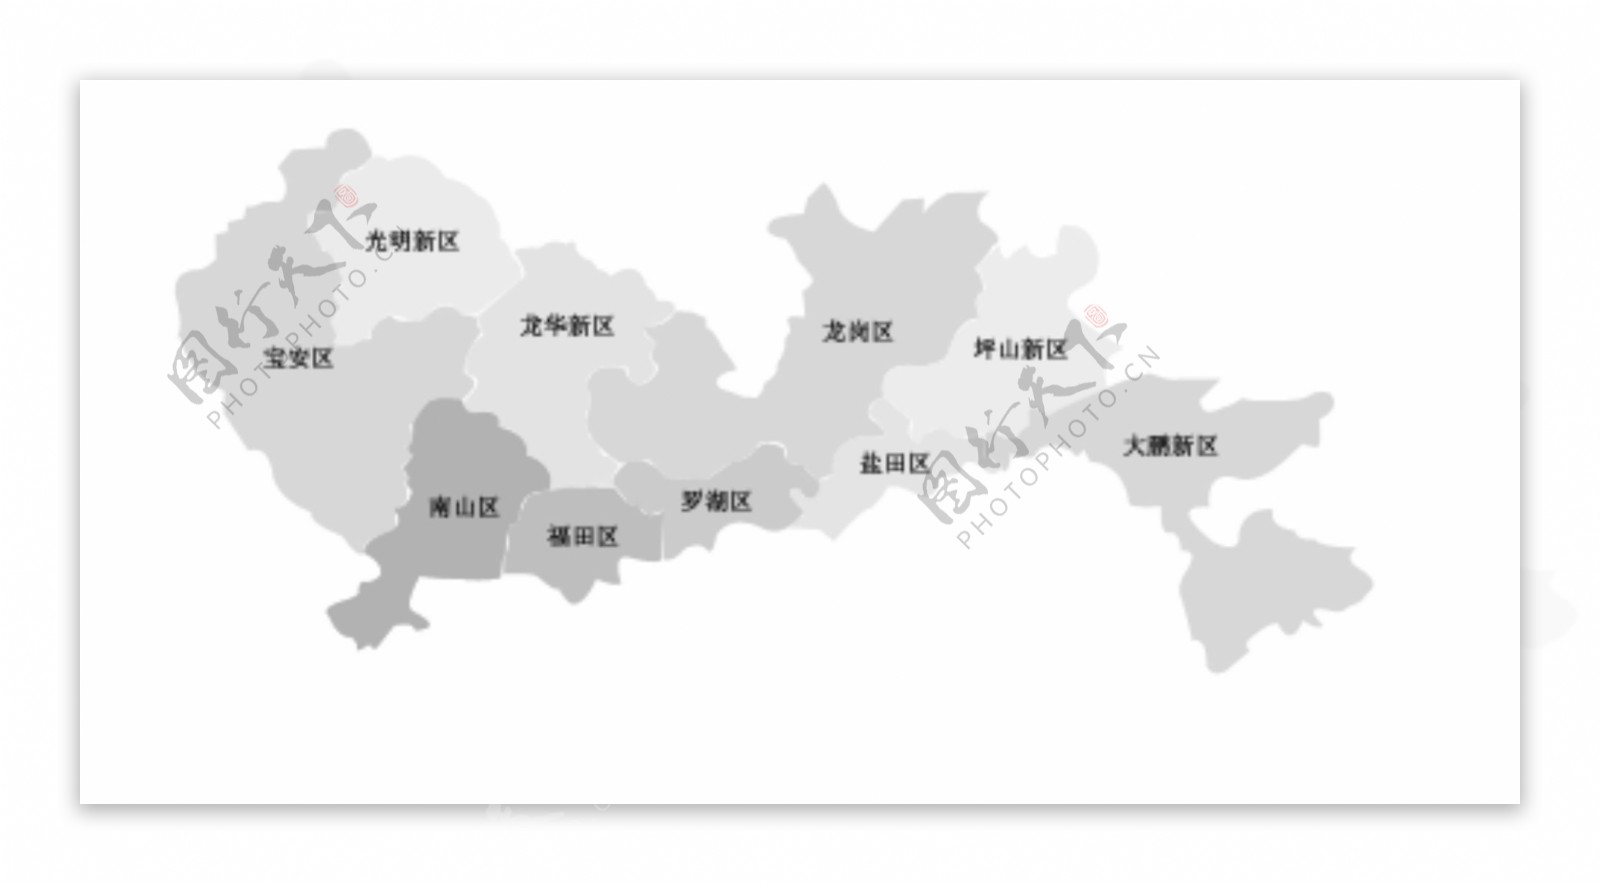 深圳行政区域划分简图